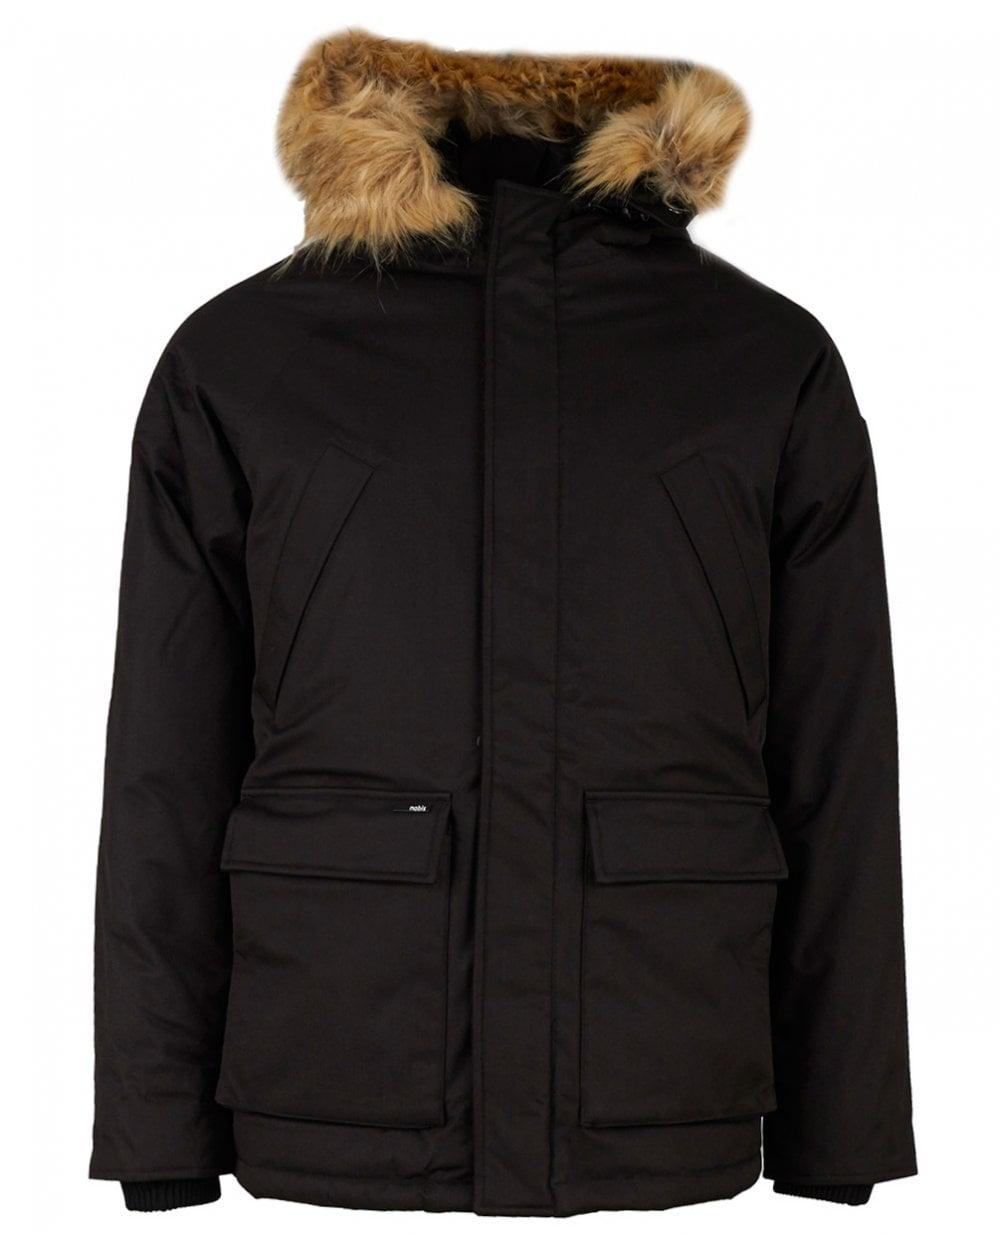 Nobis Fur Black Heritage Parka Jacket for Men - Lyst